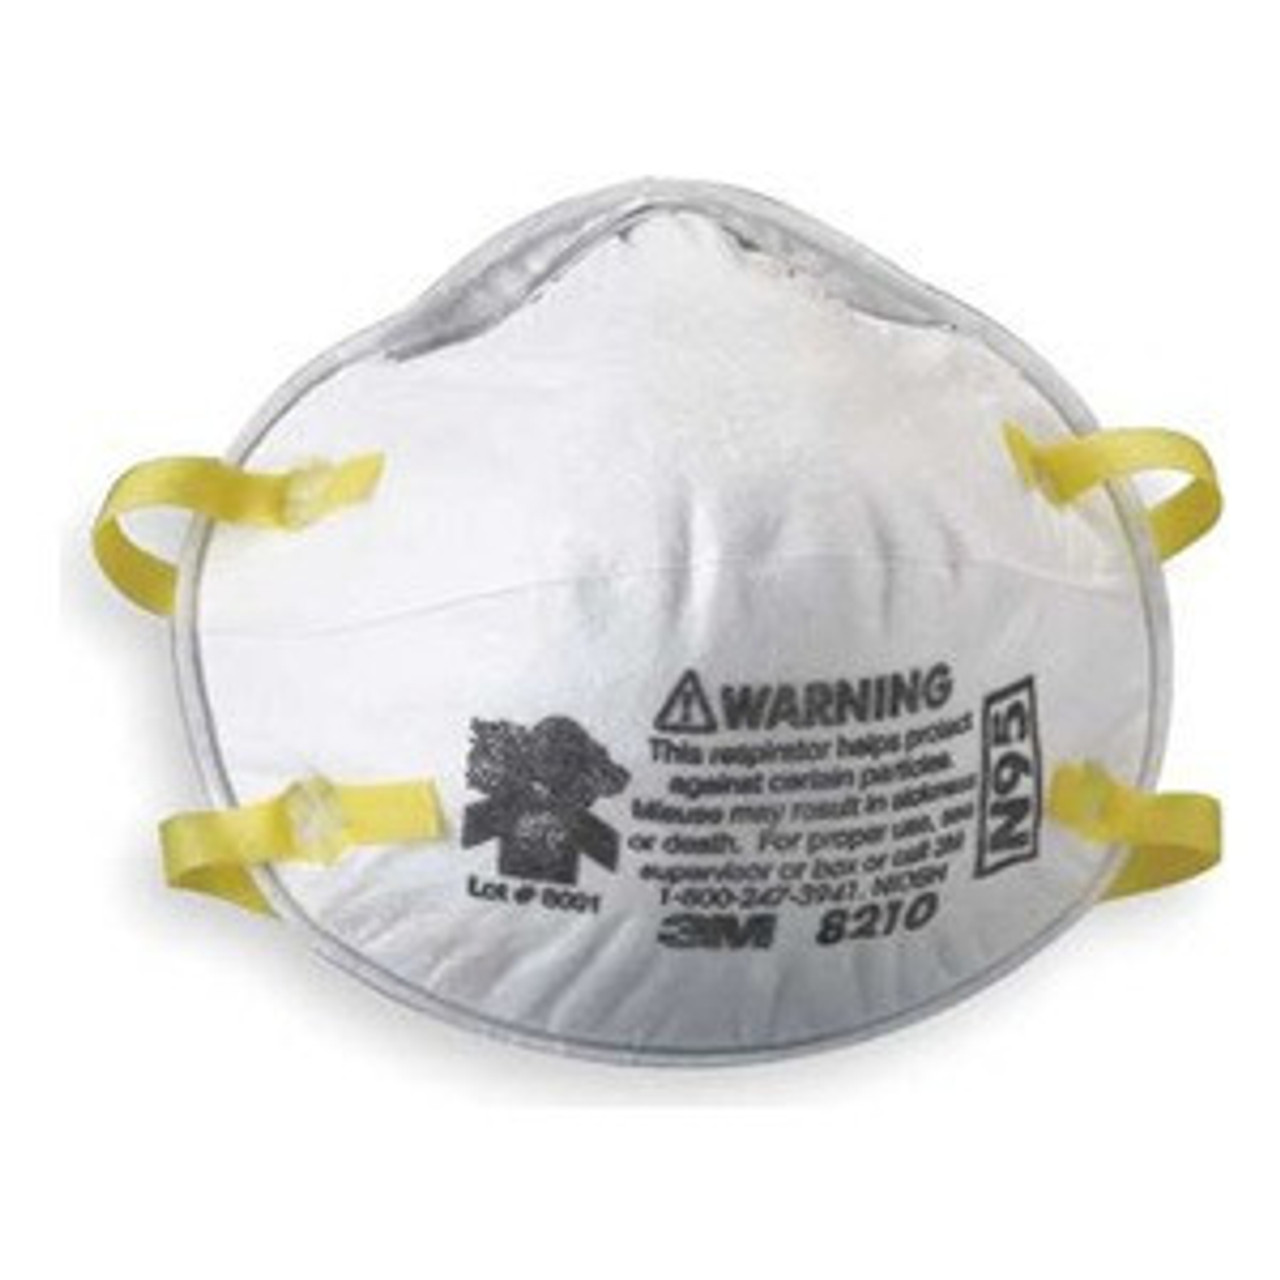 Erklæring værtinde trompet 3M 8210 N95 Particulate Dust Mask 160 Masks (8 Boxes of 20 Masks) - Jendco  Safety Supply